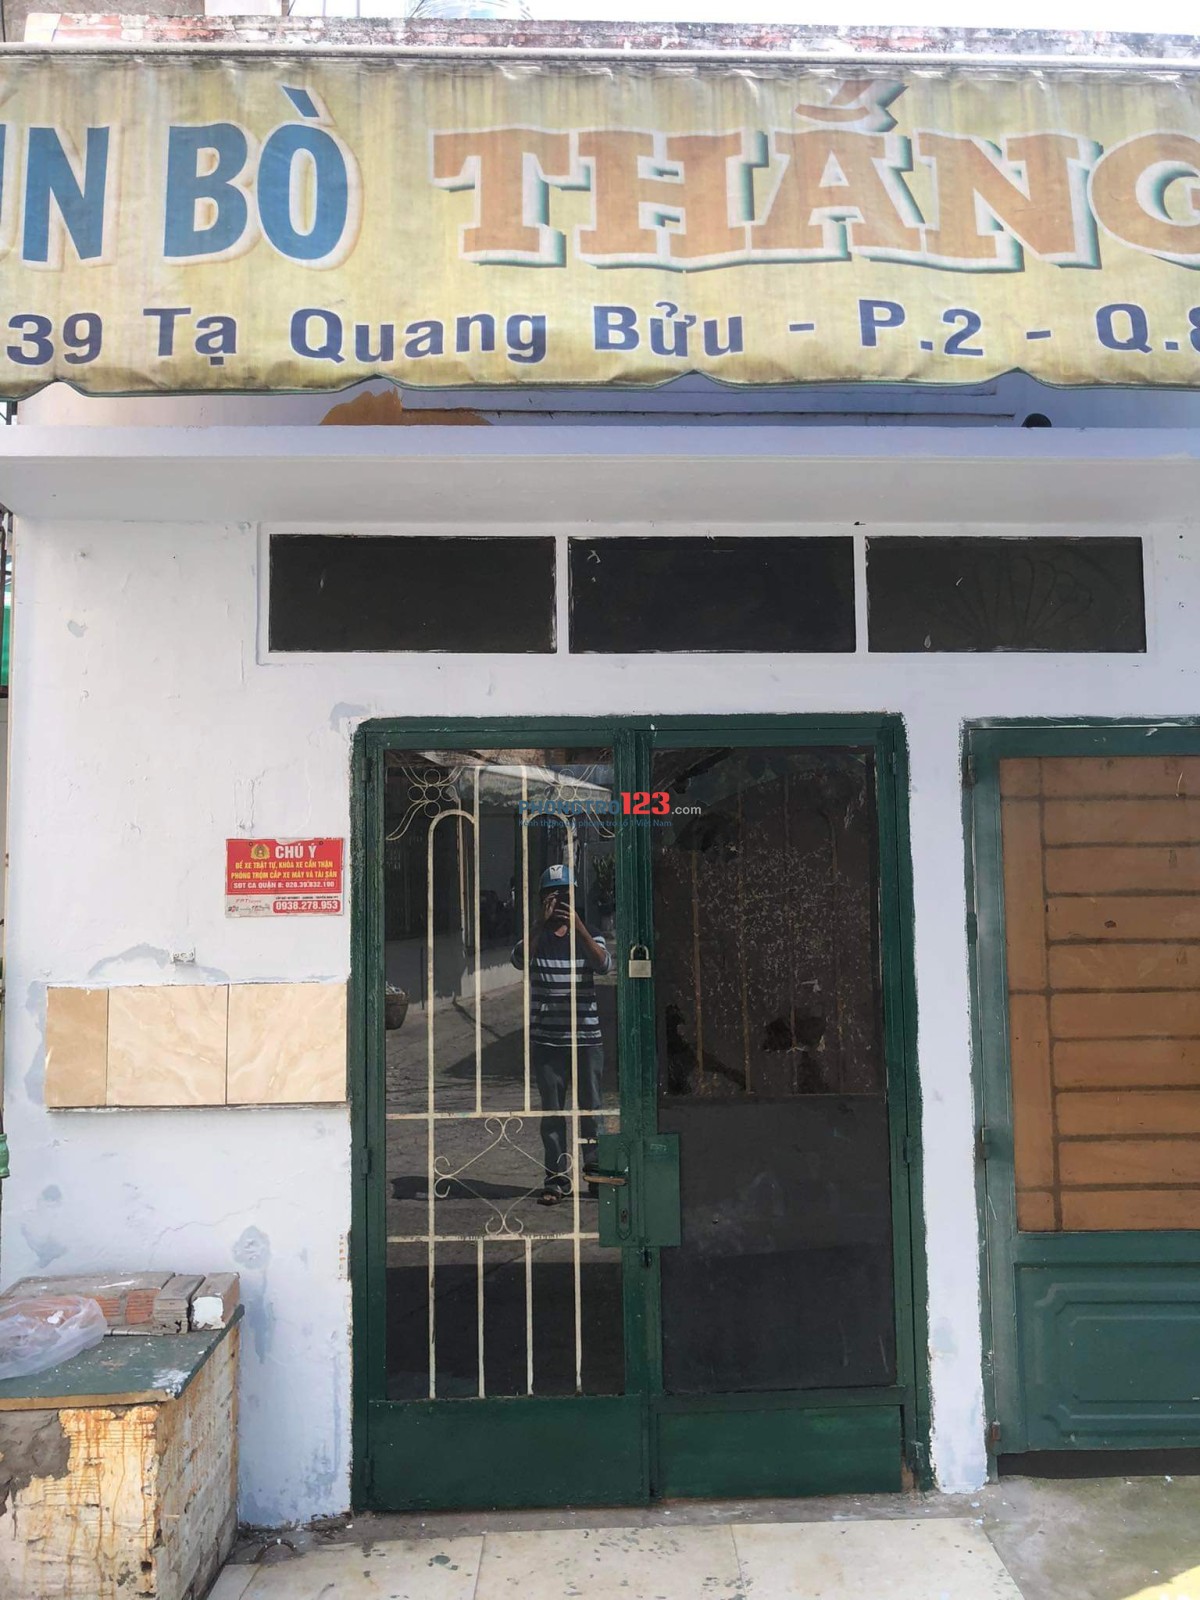 Cho thuê nhà nho số 39 hẻm 343 Tạ Quang Bửu, P. 2, Q. 8 gần cầu Chữ Y